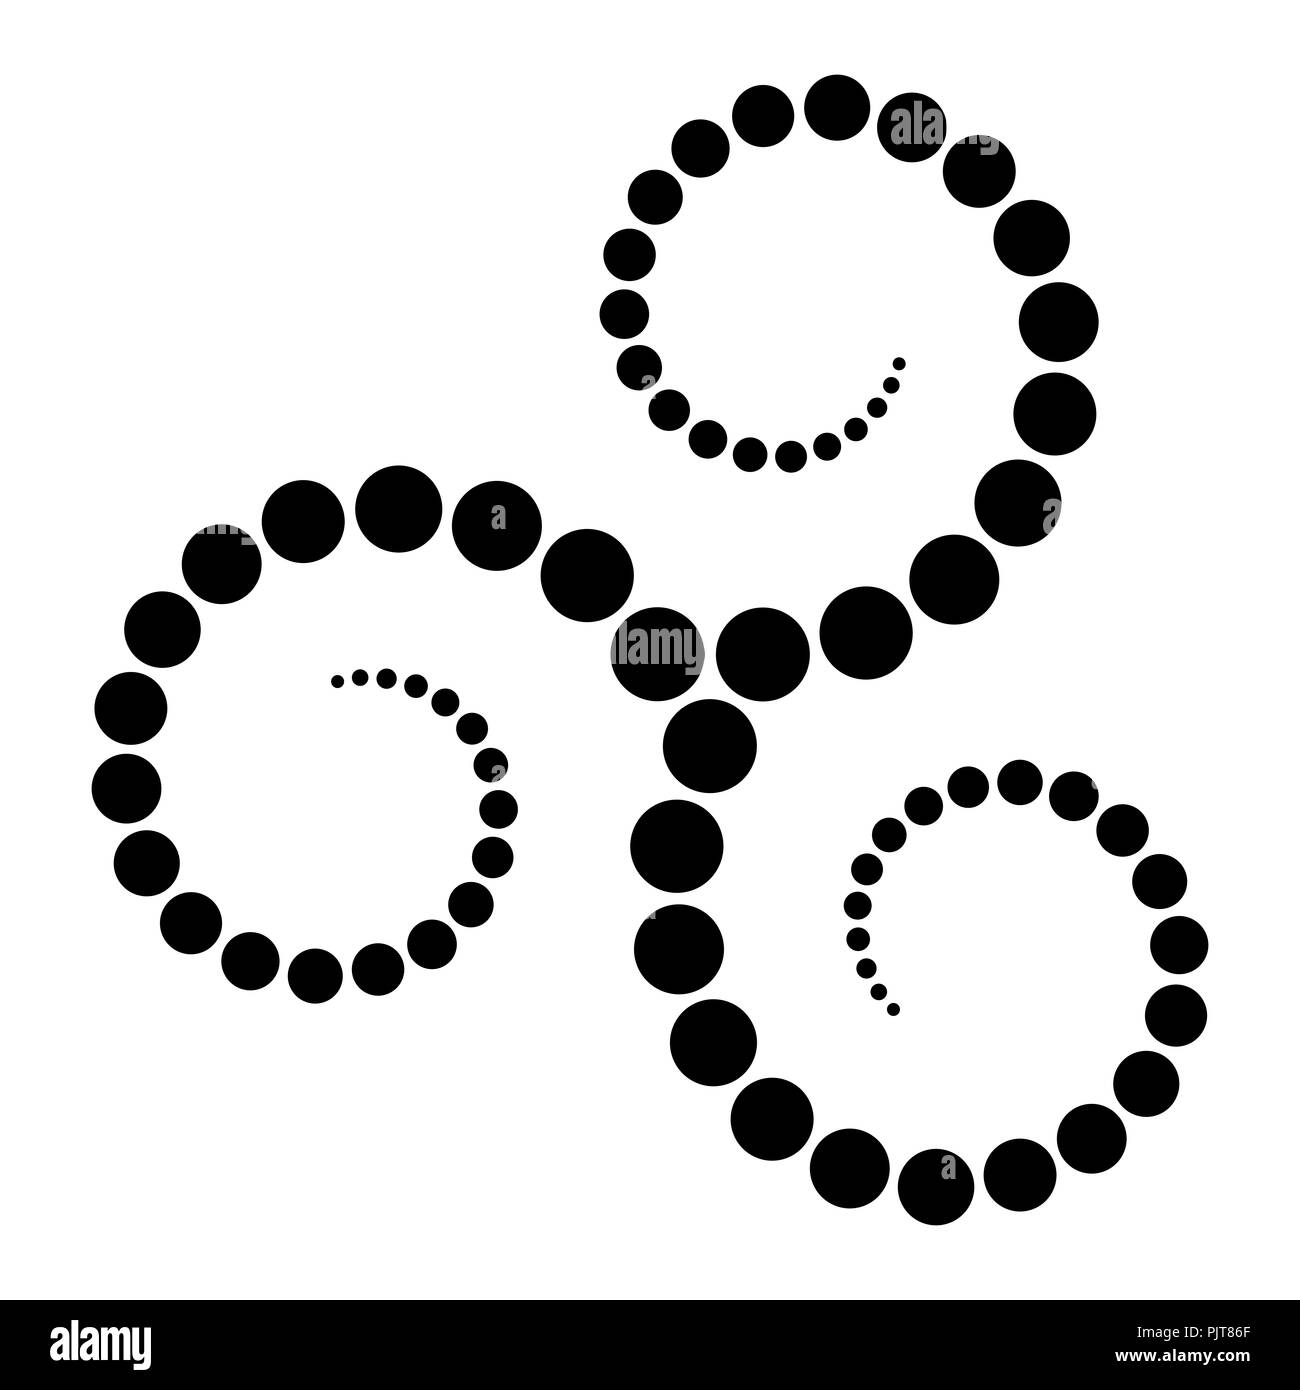 Le Triskèle celtique faite en spirale de points noirs. Points de plus en plus du centre des spirales formant une spirale triple. Tordus et relié spirales. Banque D'Images